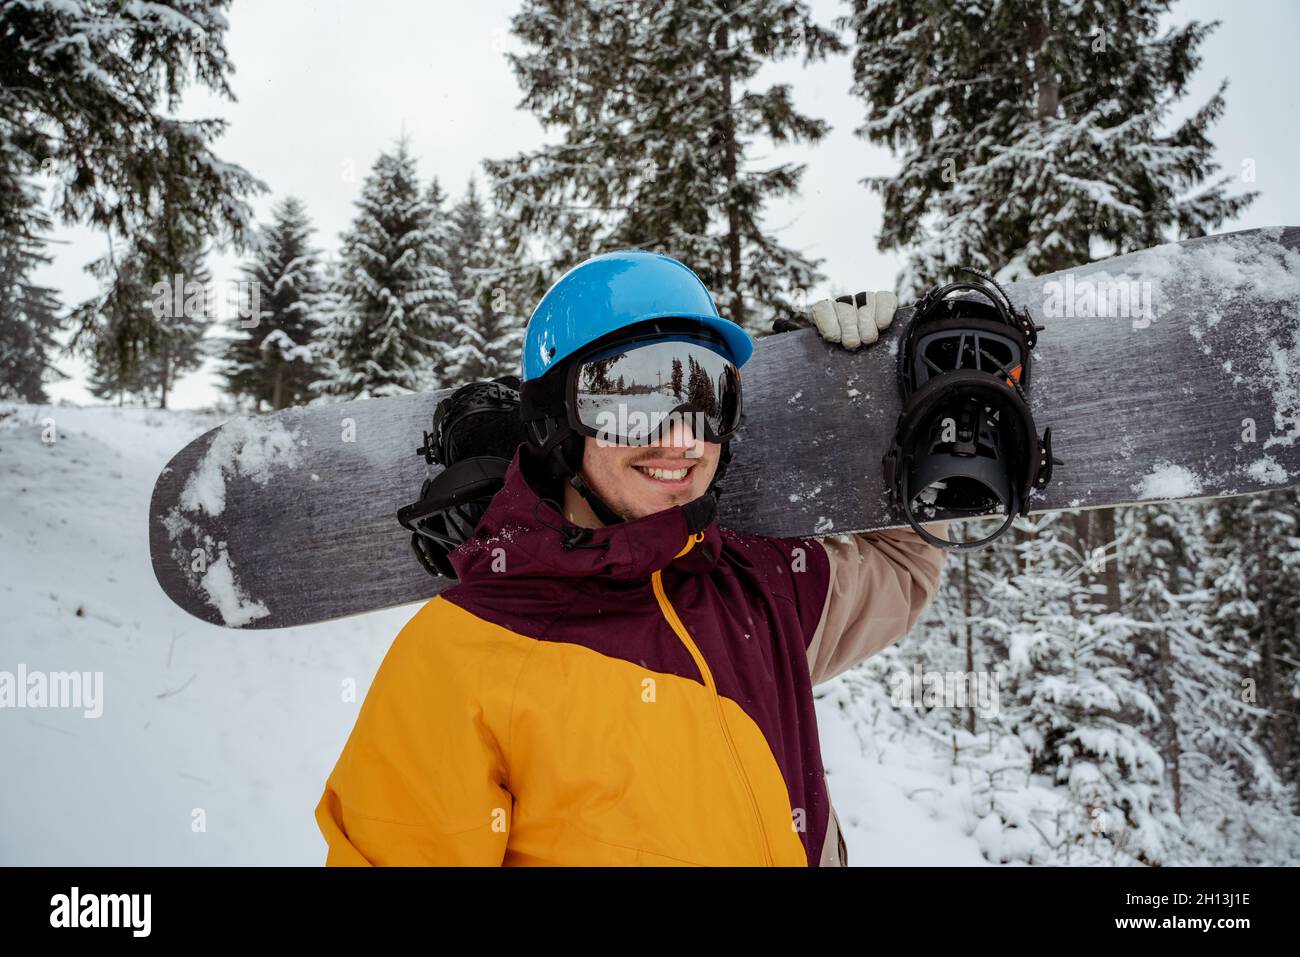 Hombre En Equipo De Esquí Con Gafas De Seguridad. Aventura Para El Deporte  Invernal. Hombre Snowboard Haciendo Senderismo En La Mo Foto de archivo -  Imagen de vacaciones, cubo: 232228420